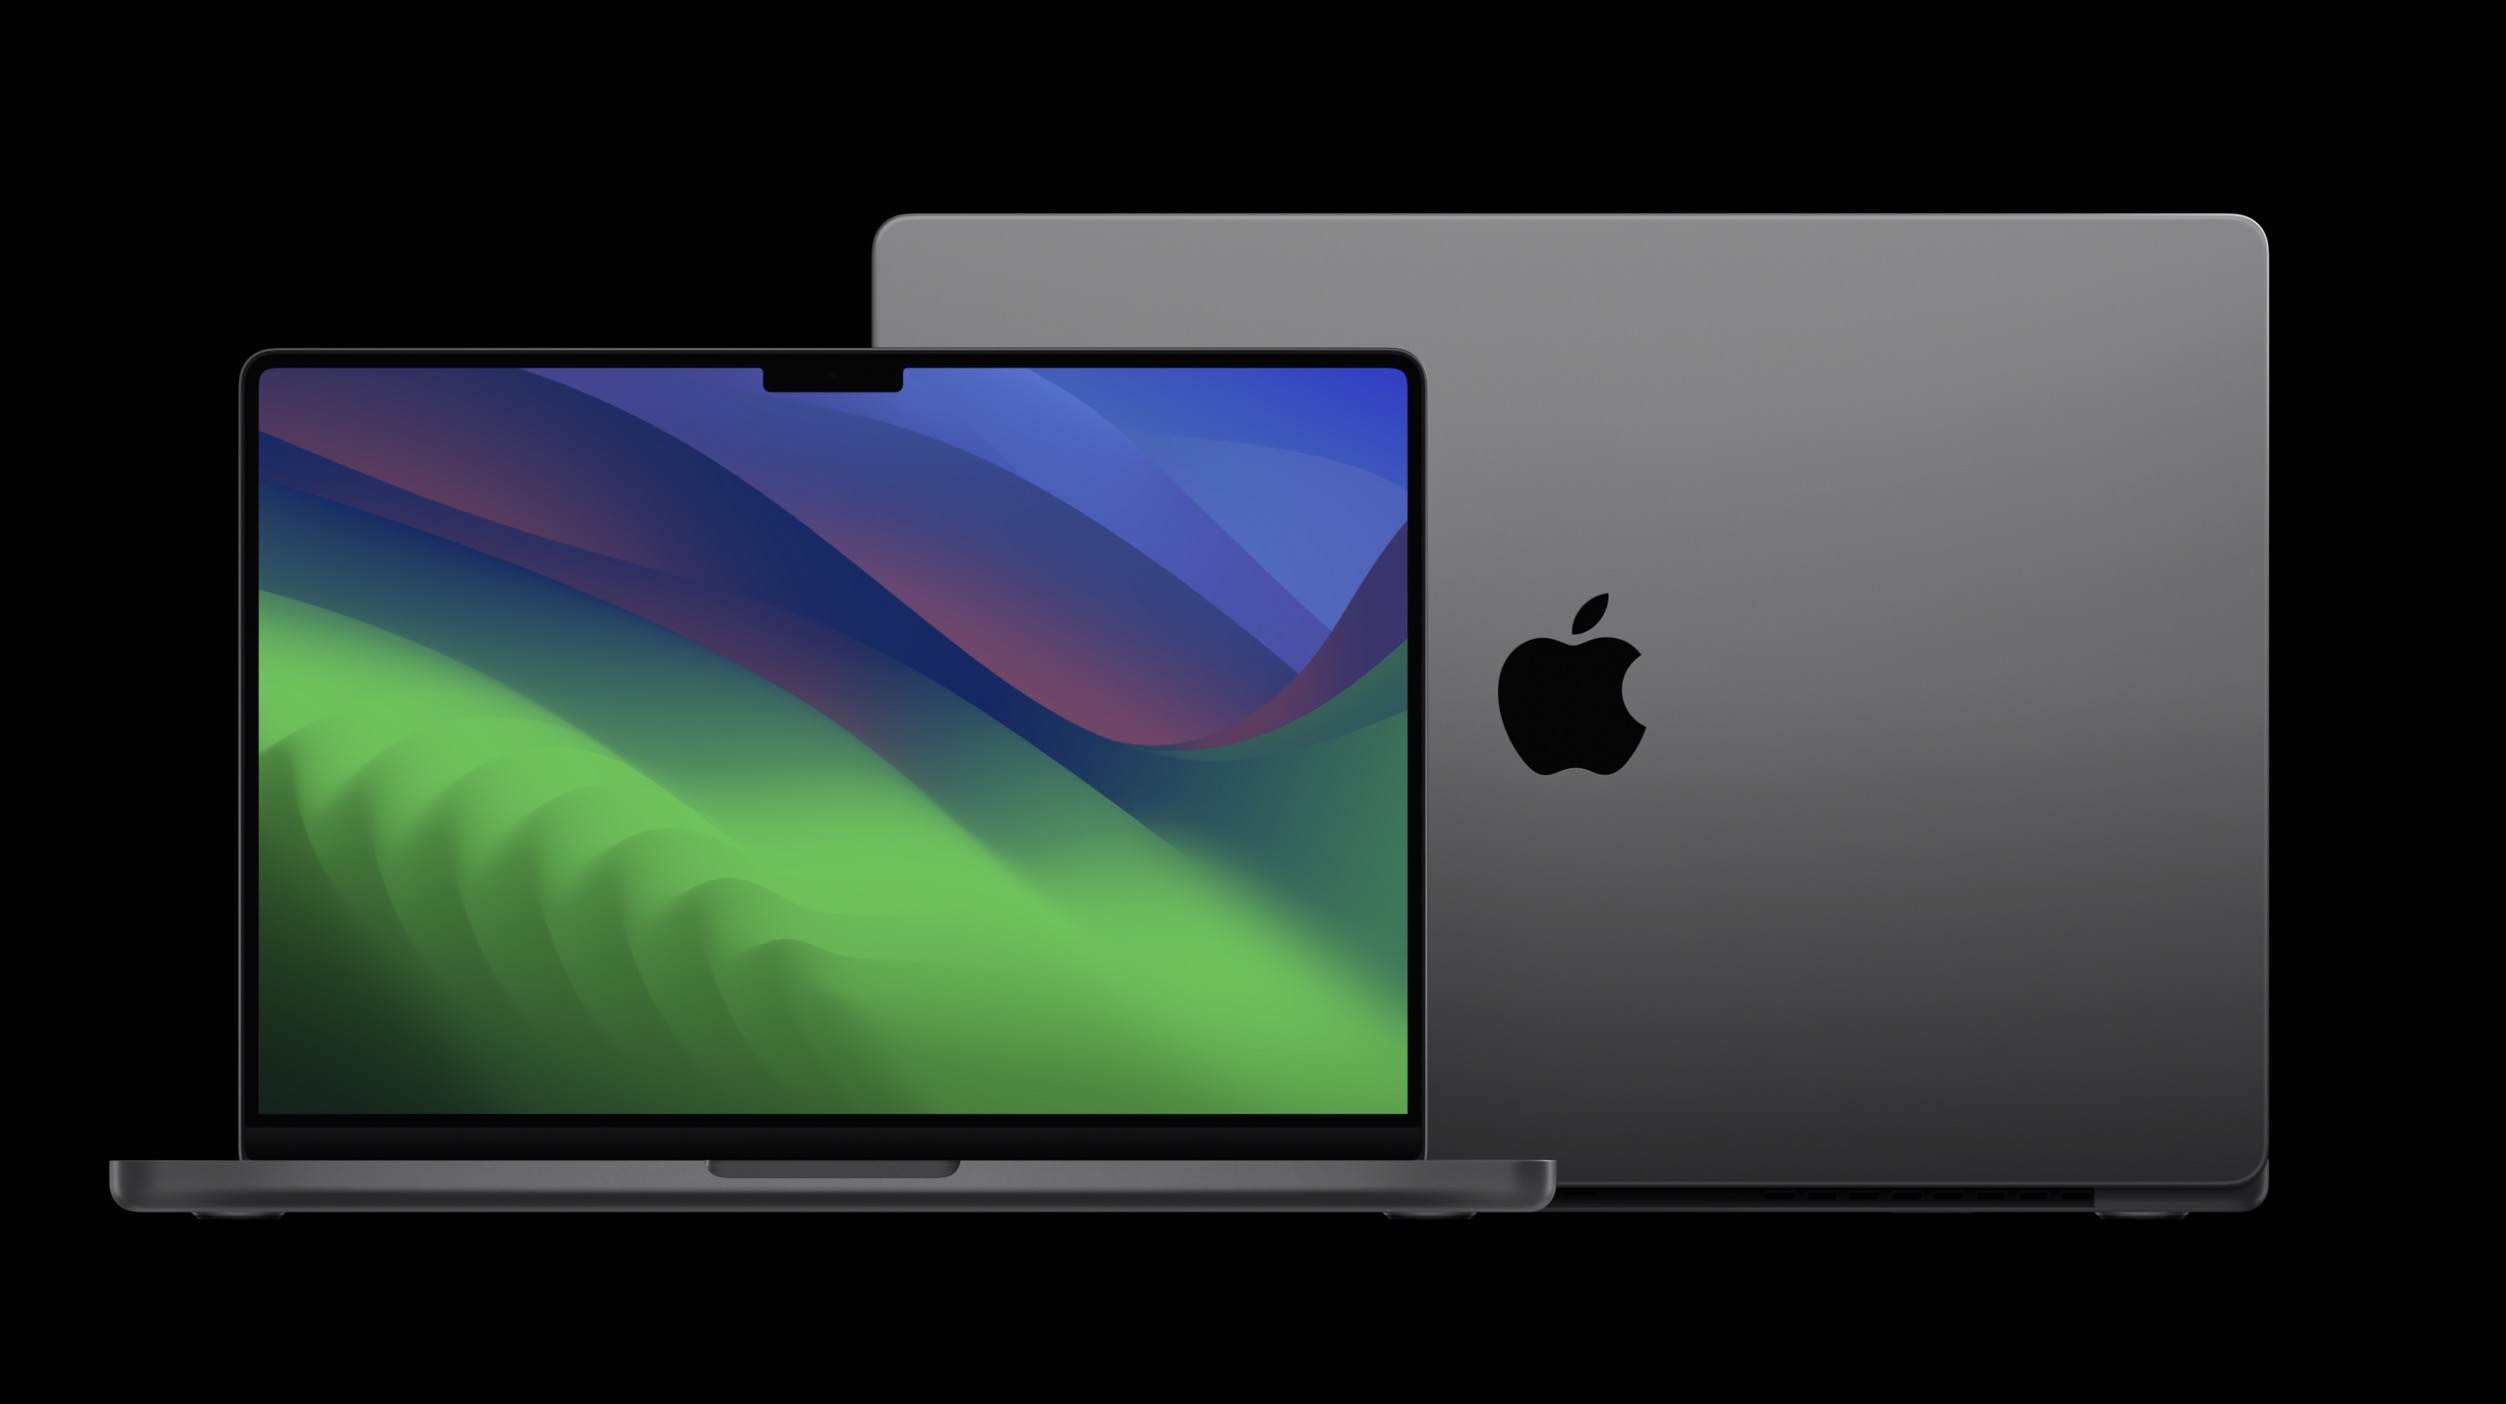 MacBook Pro comparison: M2 Pro/Max vs M1 Pro/Max - 9to5Mac